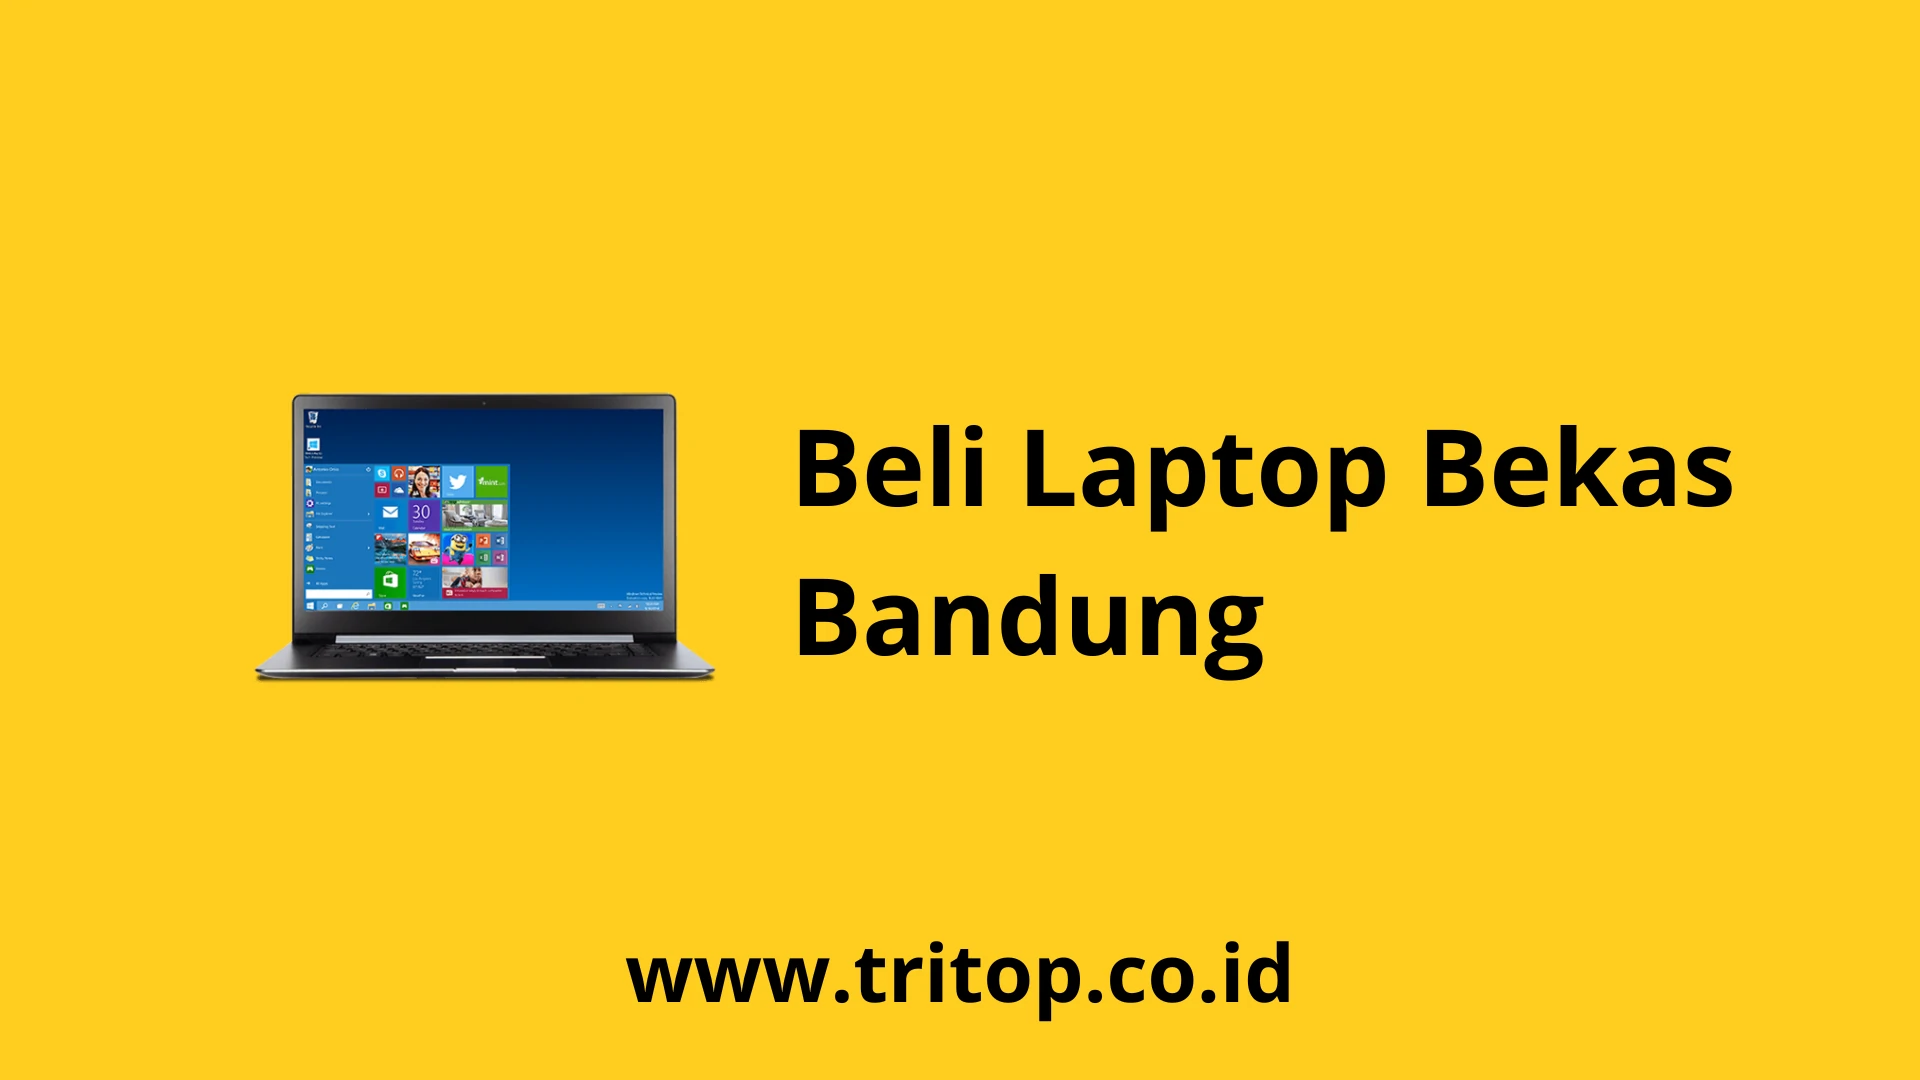 Beli Laptop Bekas Bandung